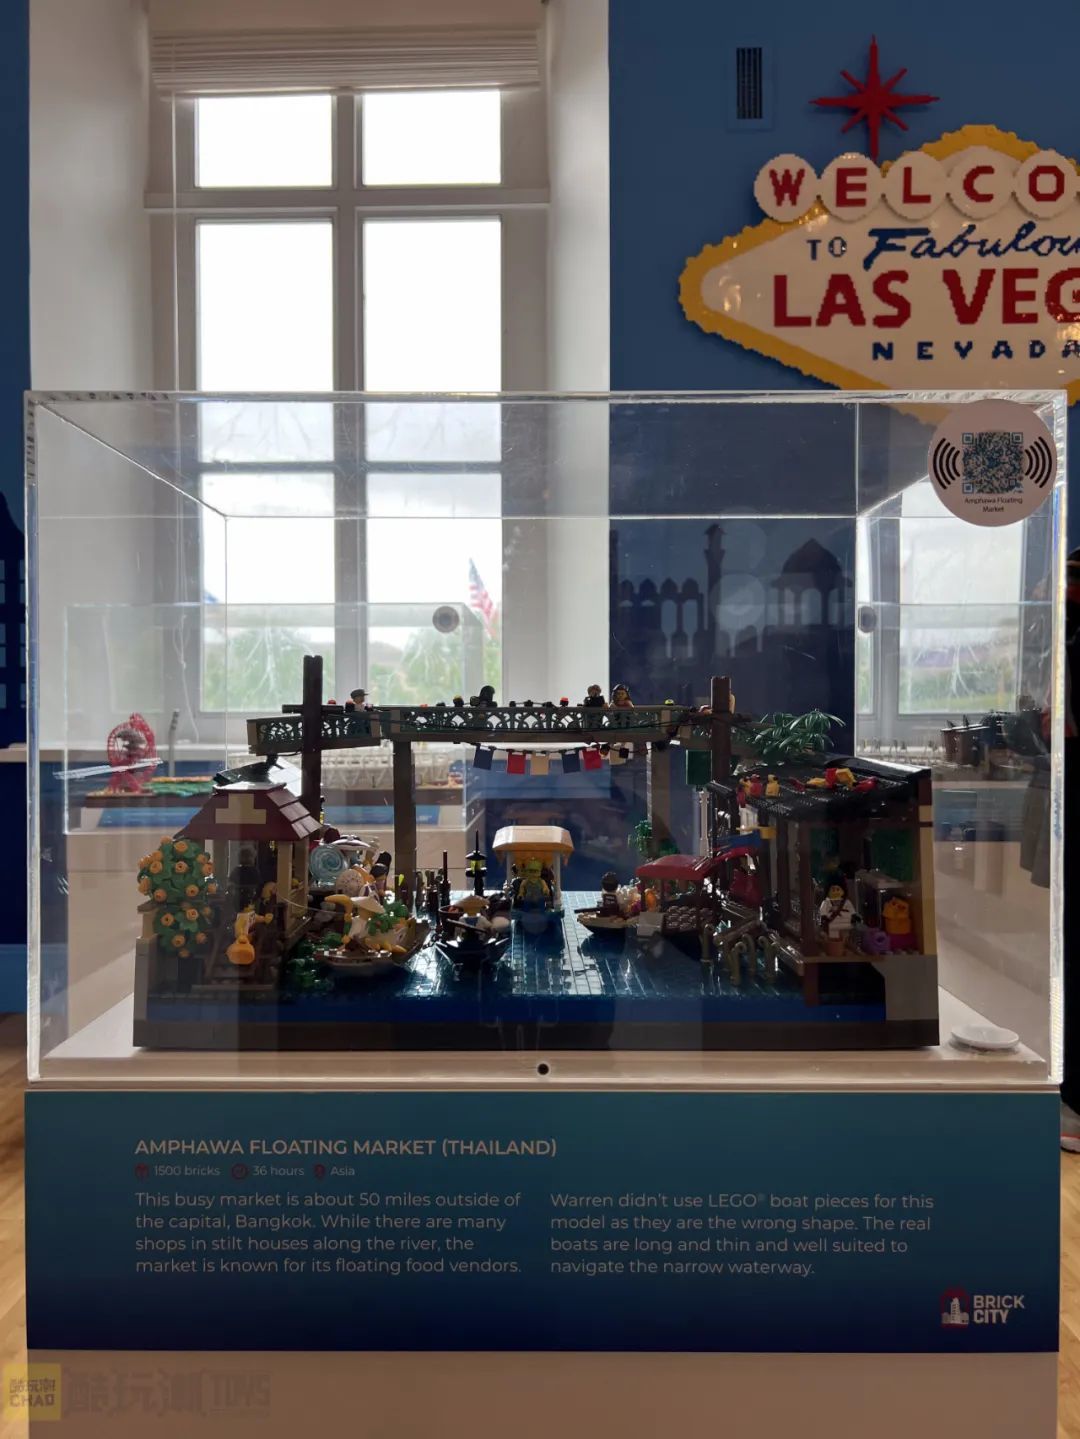 【周边专区】美国国家博物馆Brick City积木展——沃伦·埃尔斯莫尔个人作品展